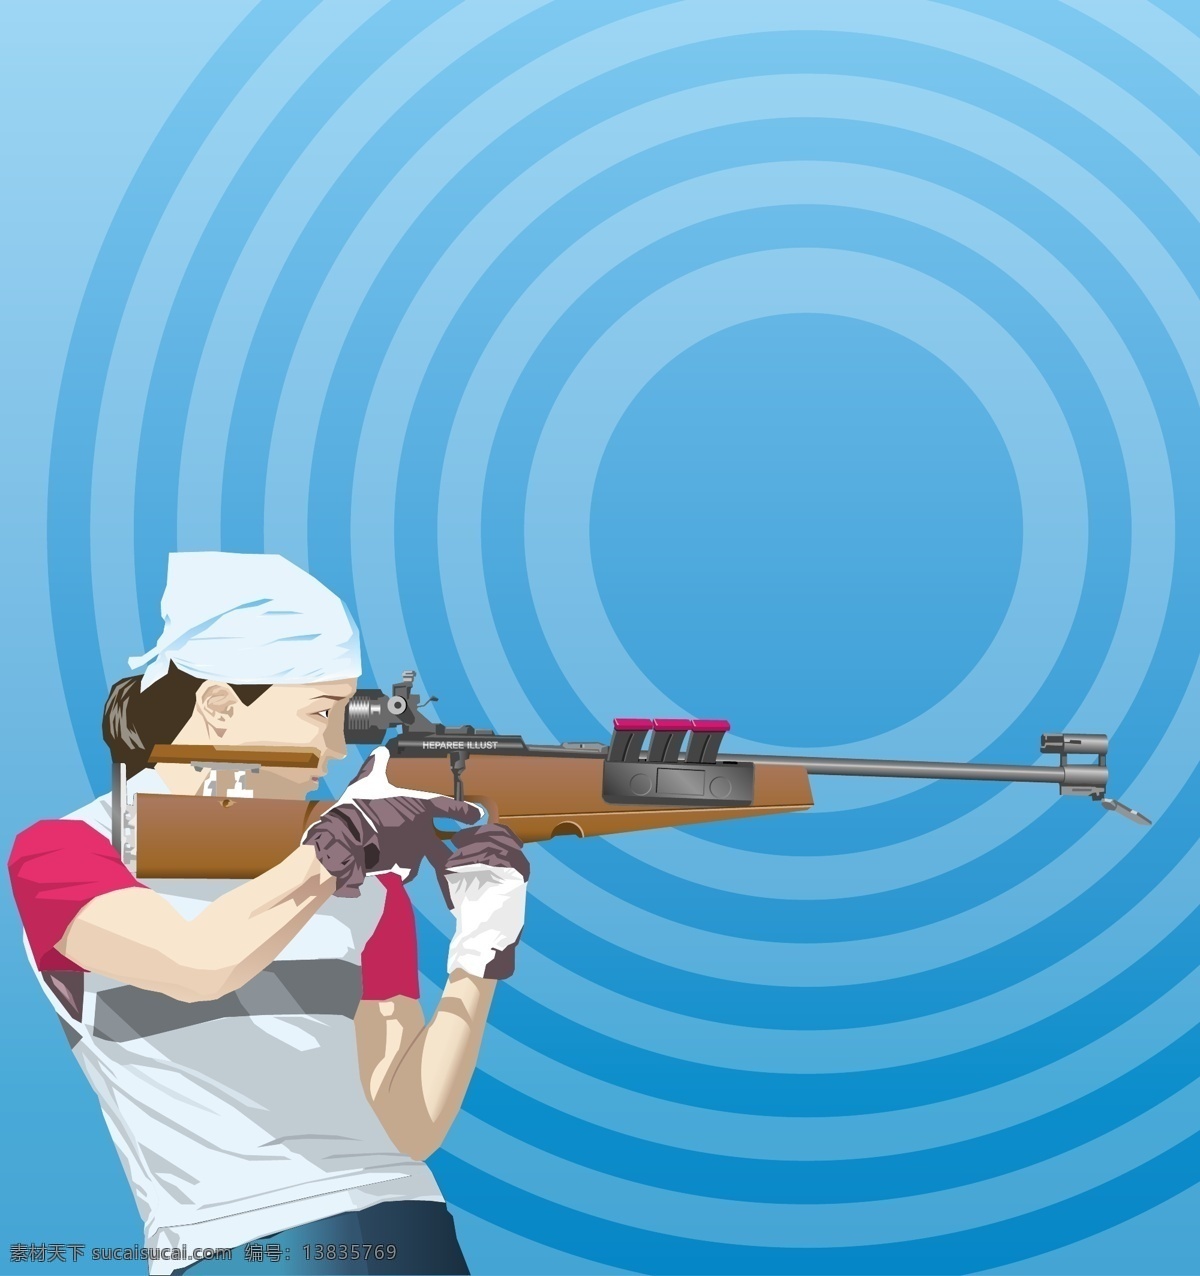 女性射击运动 女性 步枪 靶环 射击 运动 矢量人物 日常生活 体育运动 人物 矢量图 矢量图库